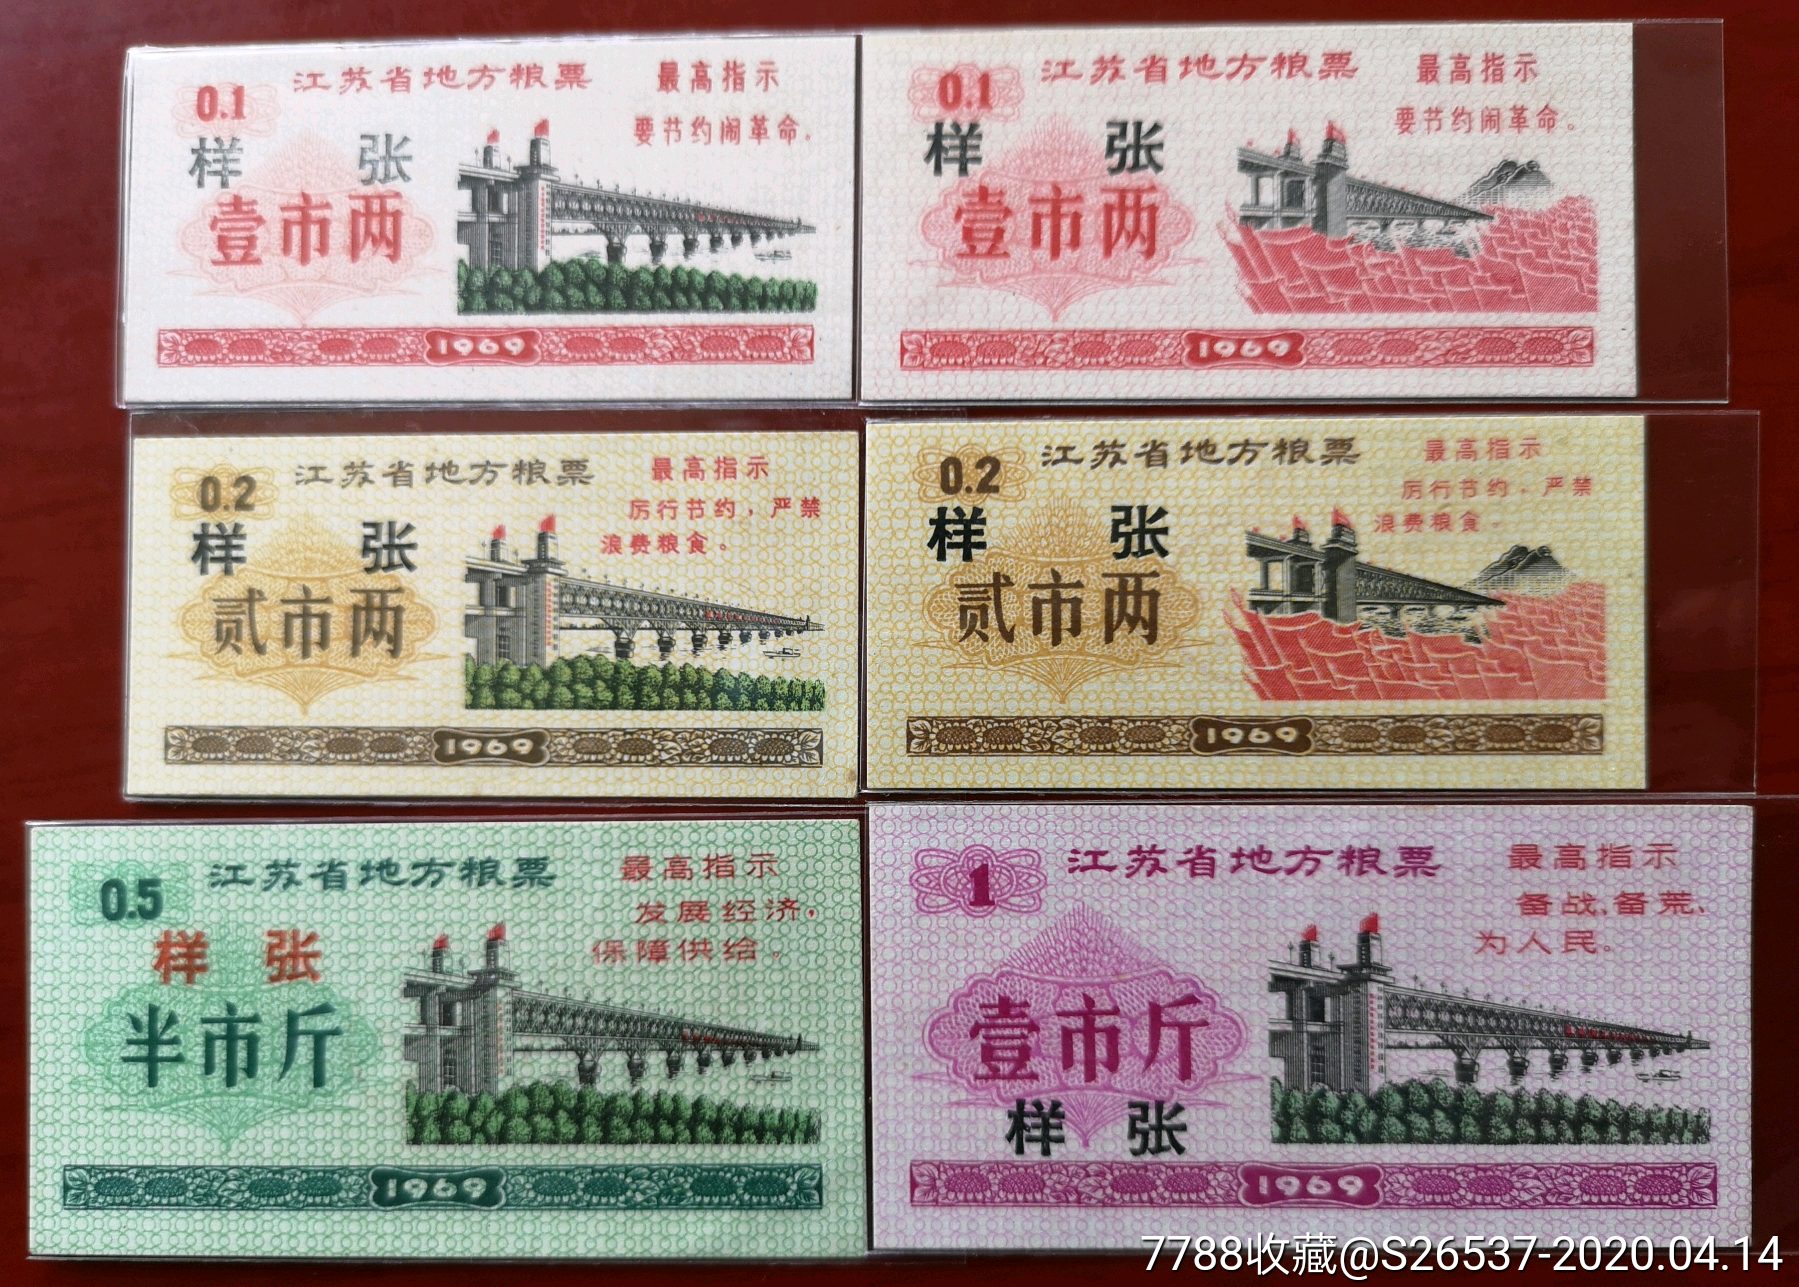 1969江苏省地方粮票《票样》6全一套稀少,票面全都上下边居中